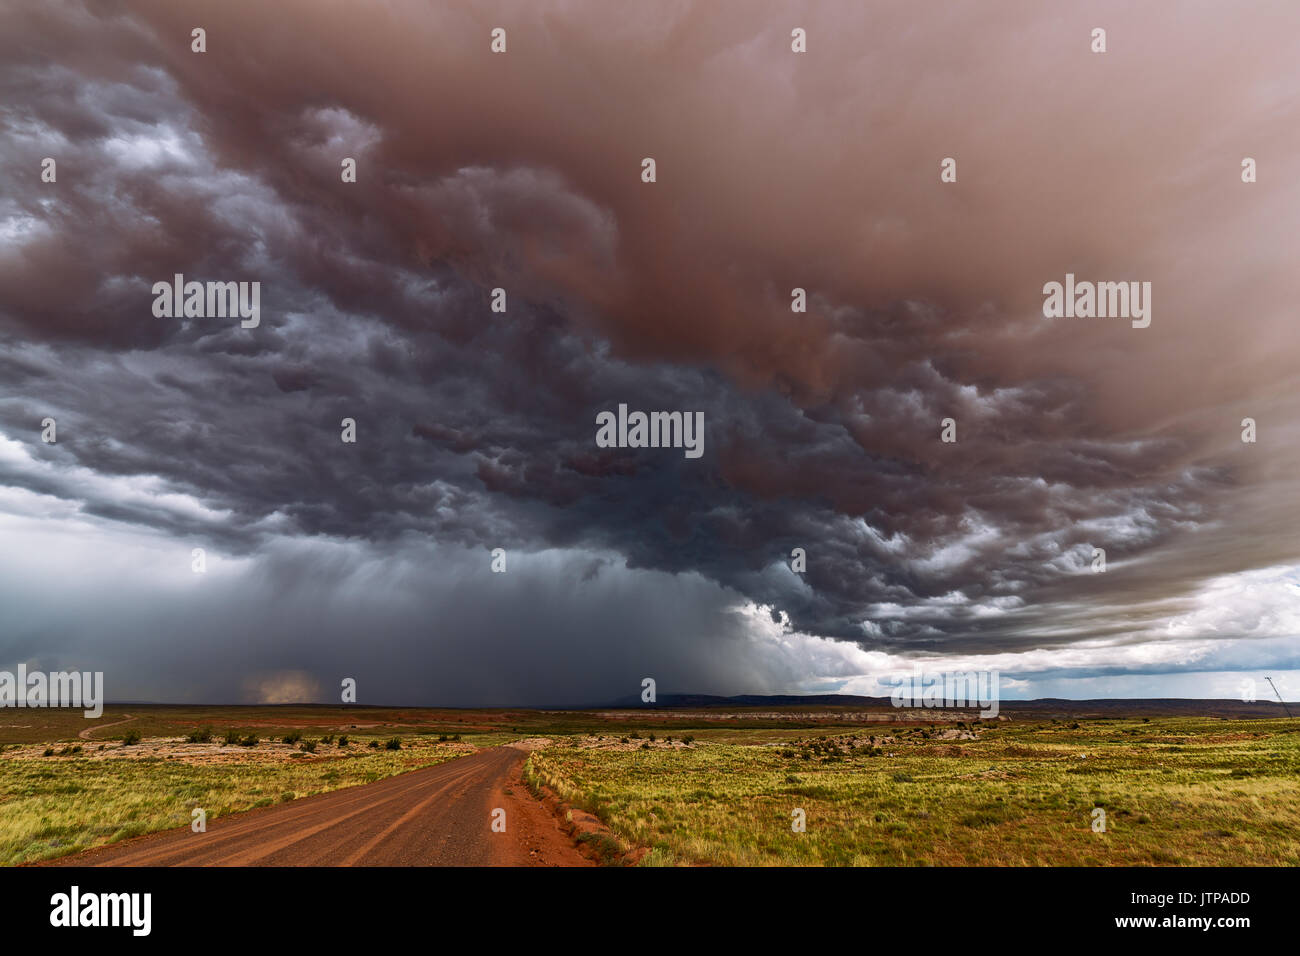 Ominous stormy sky ahead of an Arizona monsoon thunderstorm near Tonalea Stock Photo